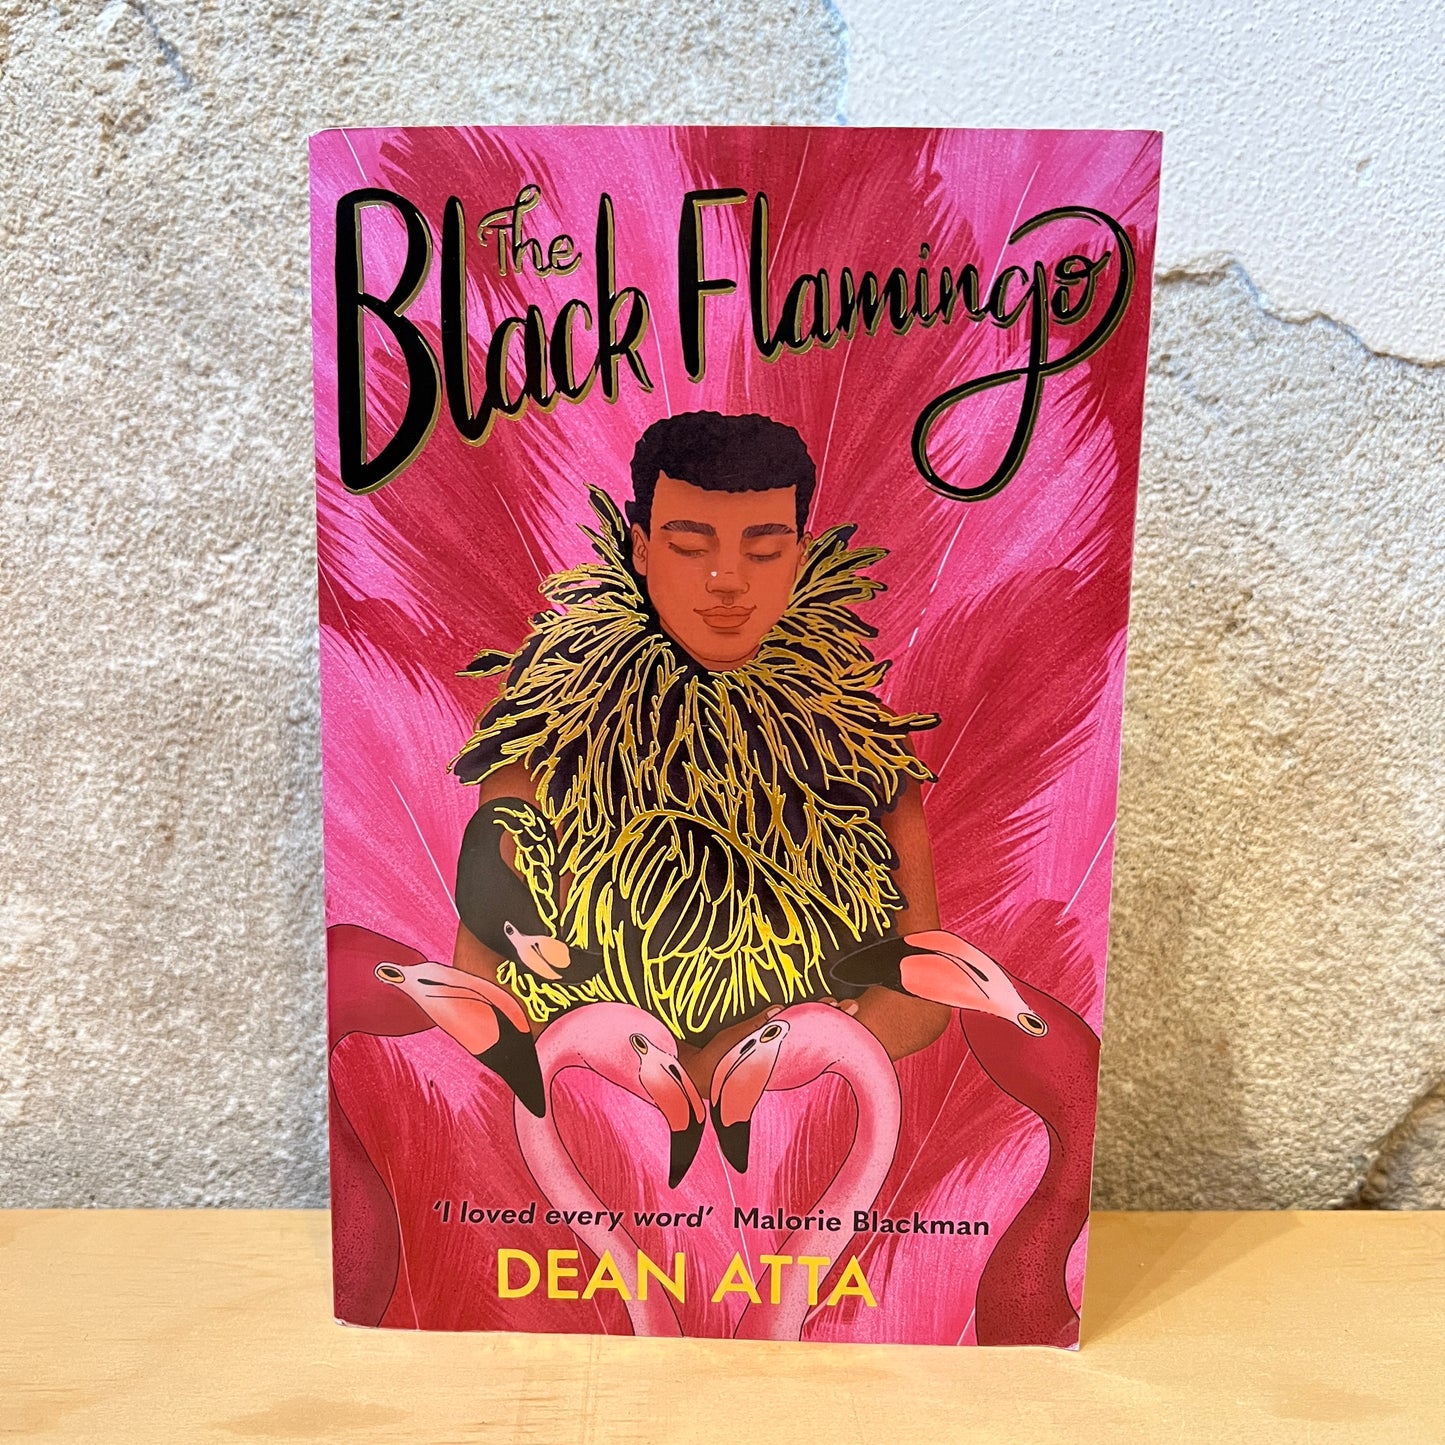 The Black Flamingo – Dean Atta